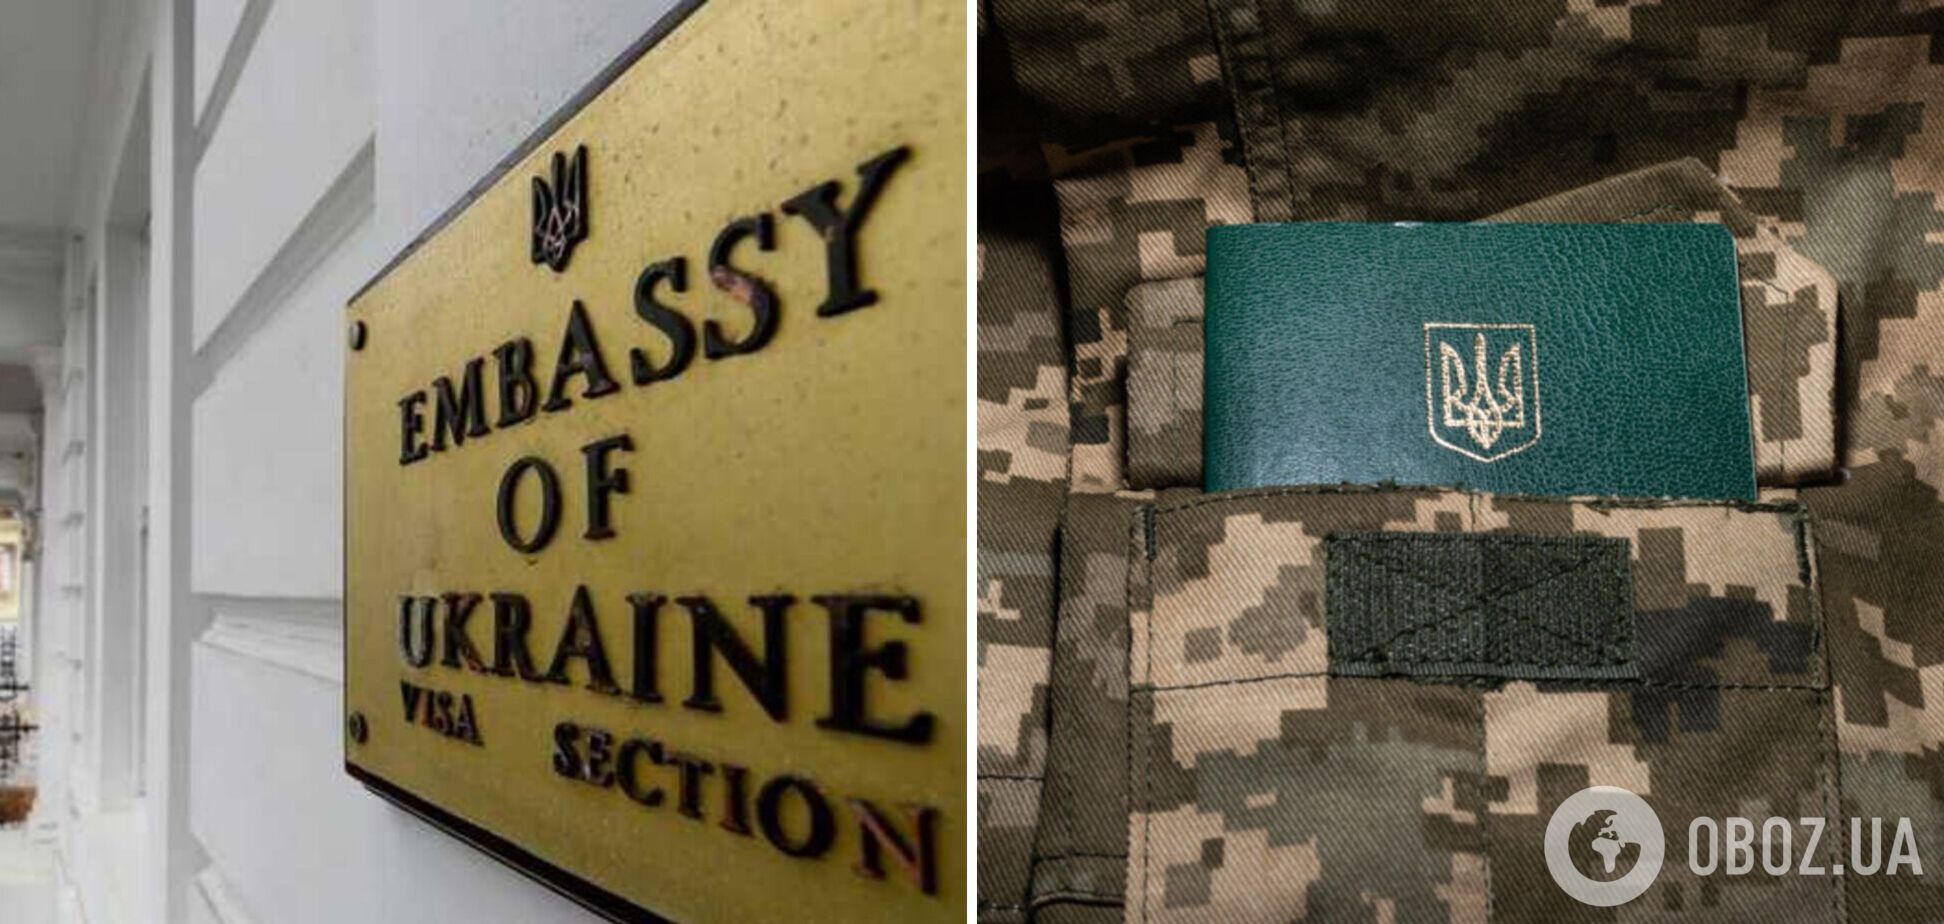 Консульство України в Лондоні закликало чоловіків стати на військовий облік за кордоном